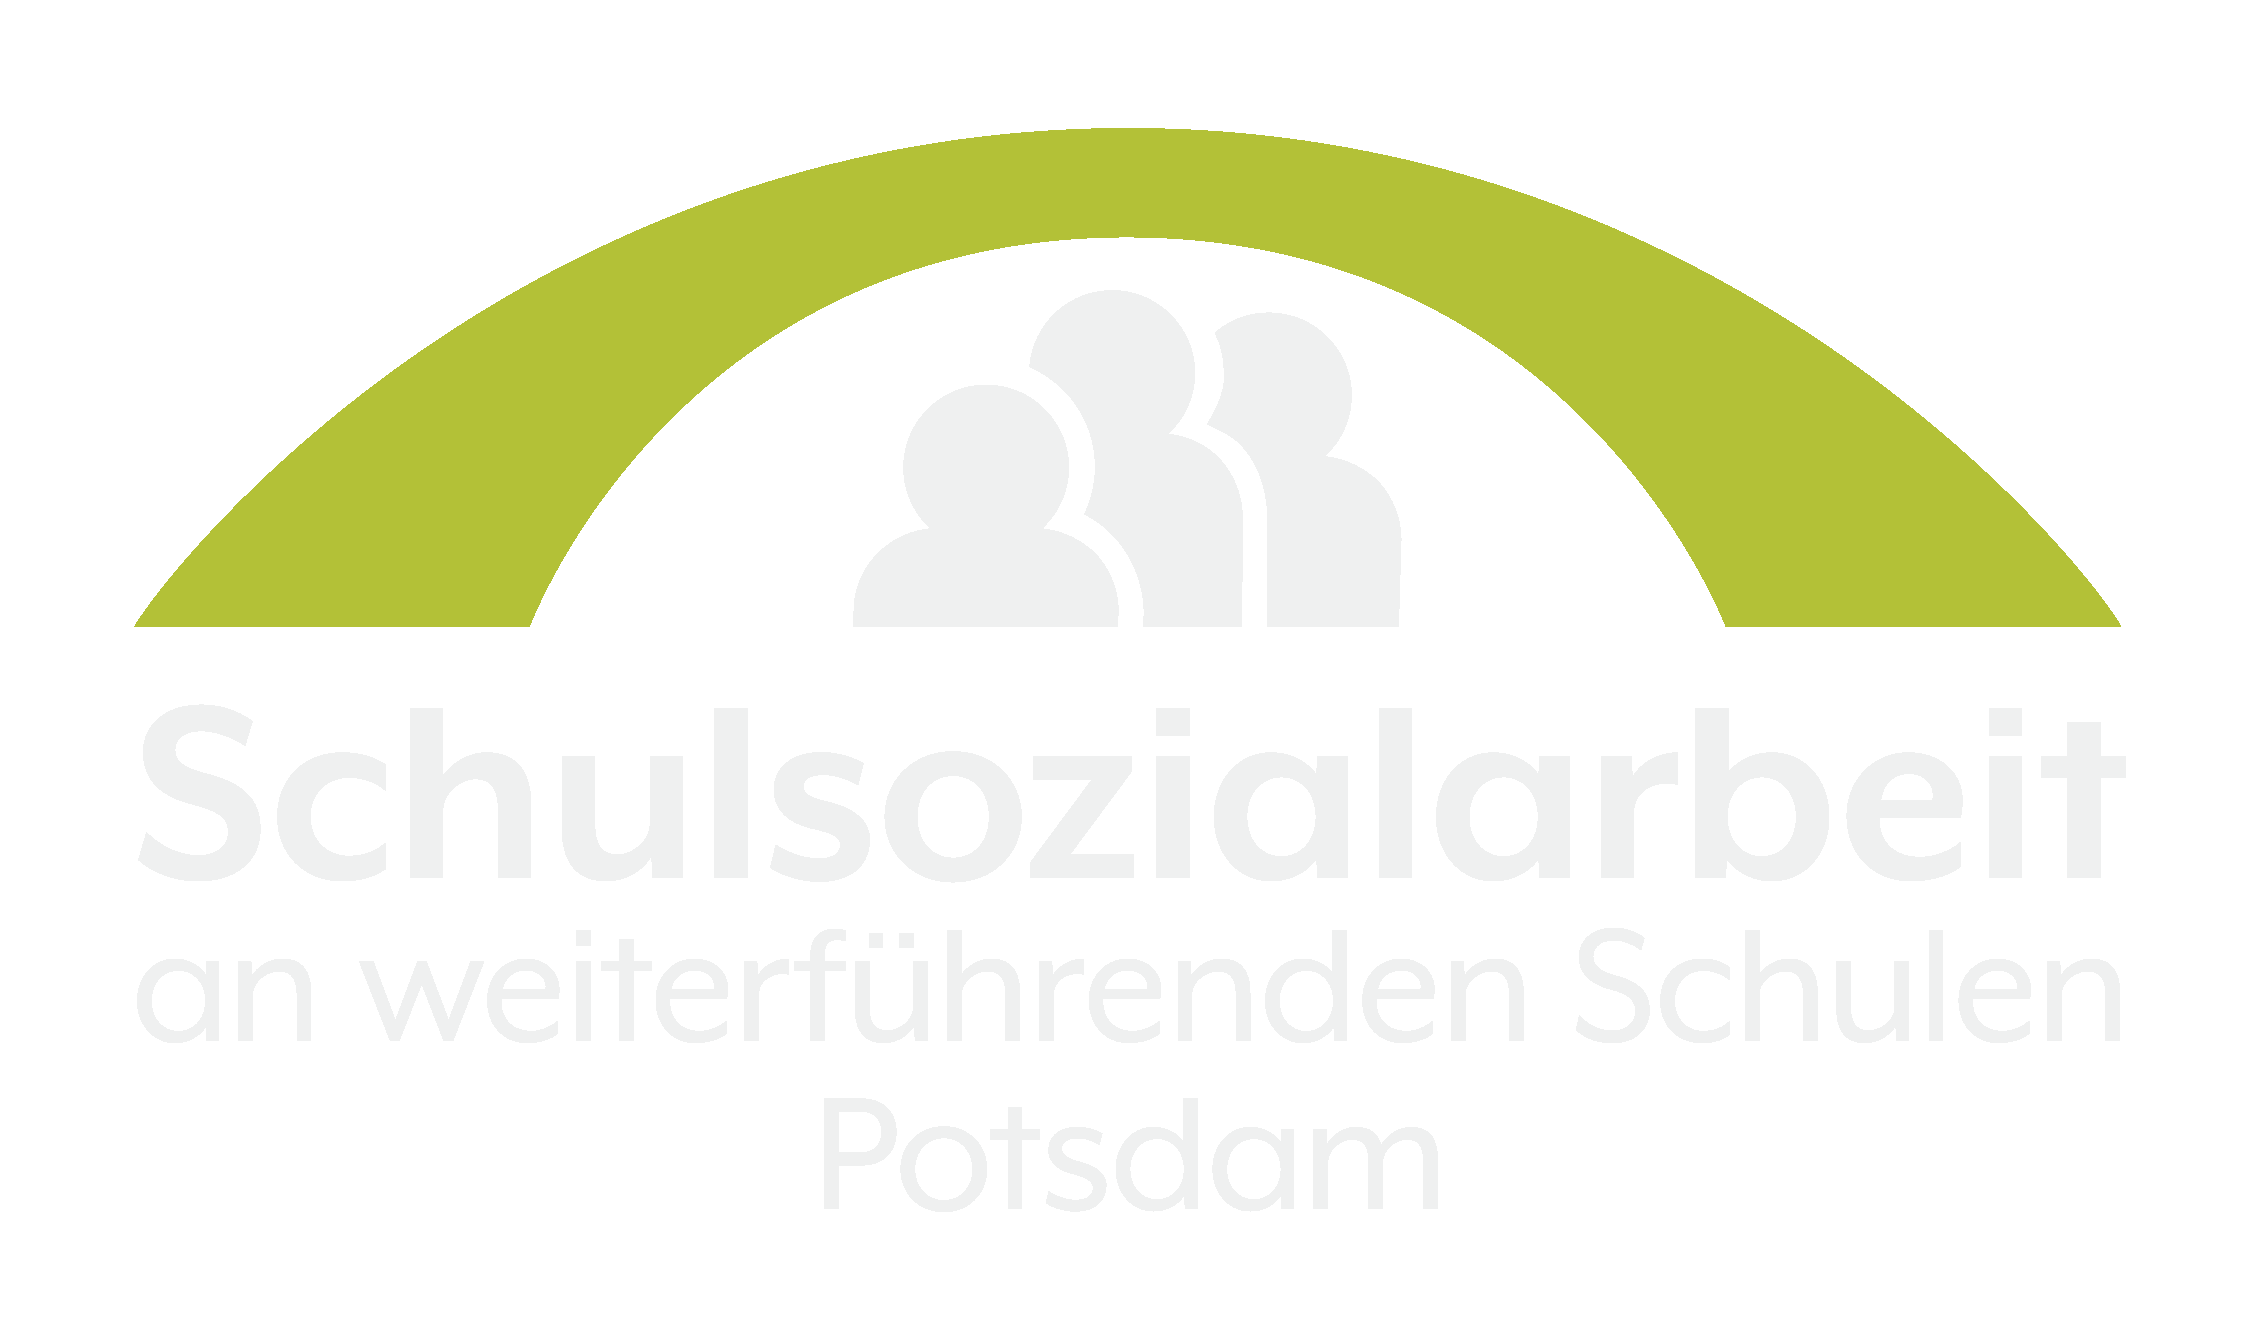 Schulsozialarbeit an weiterführenden Schulen in Potsdam